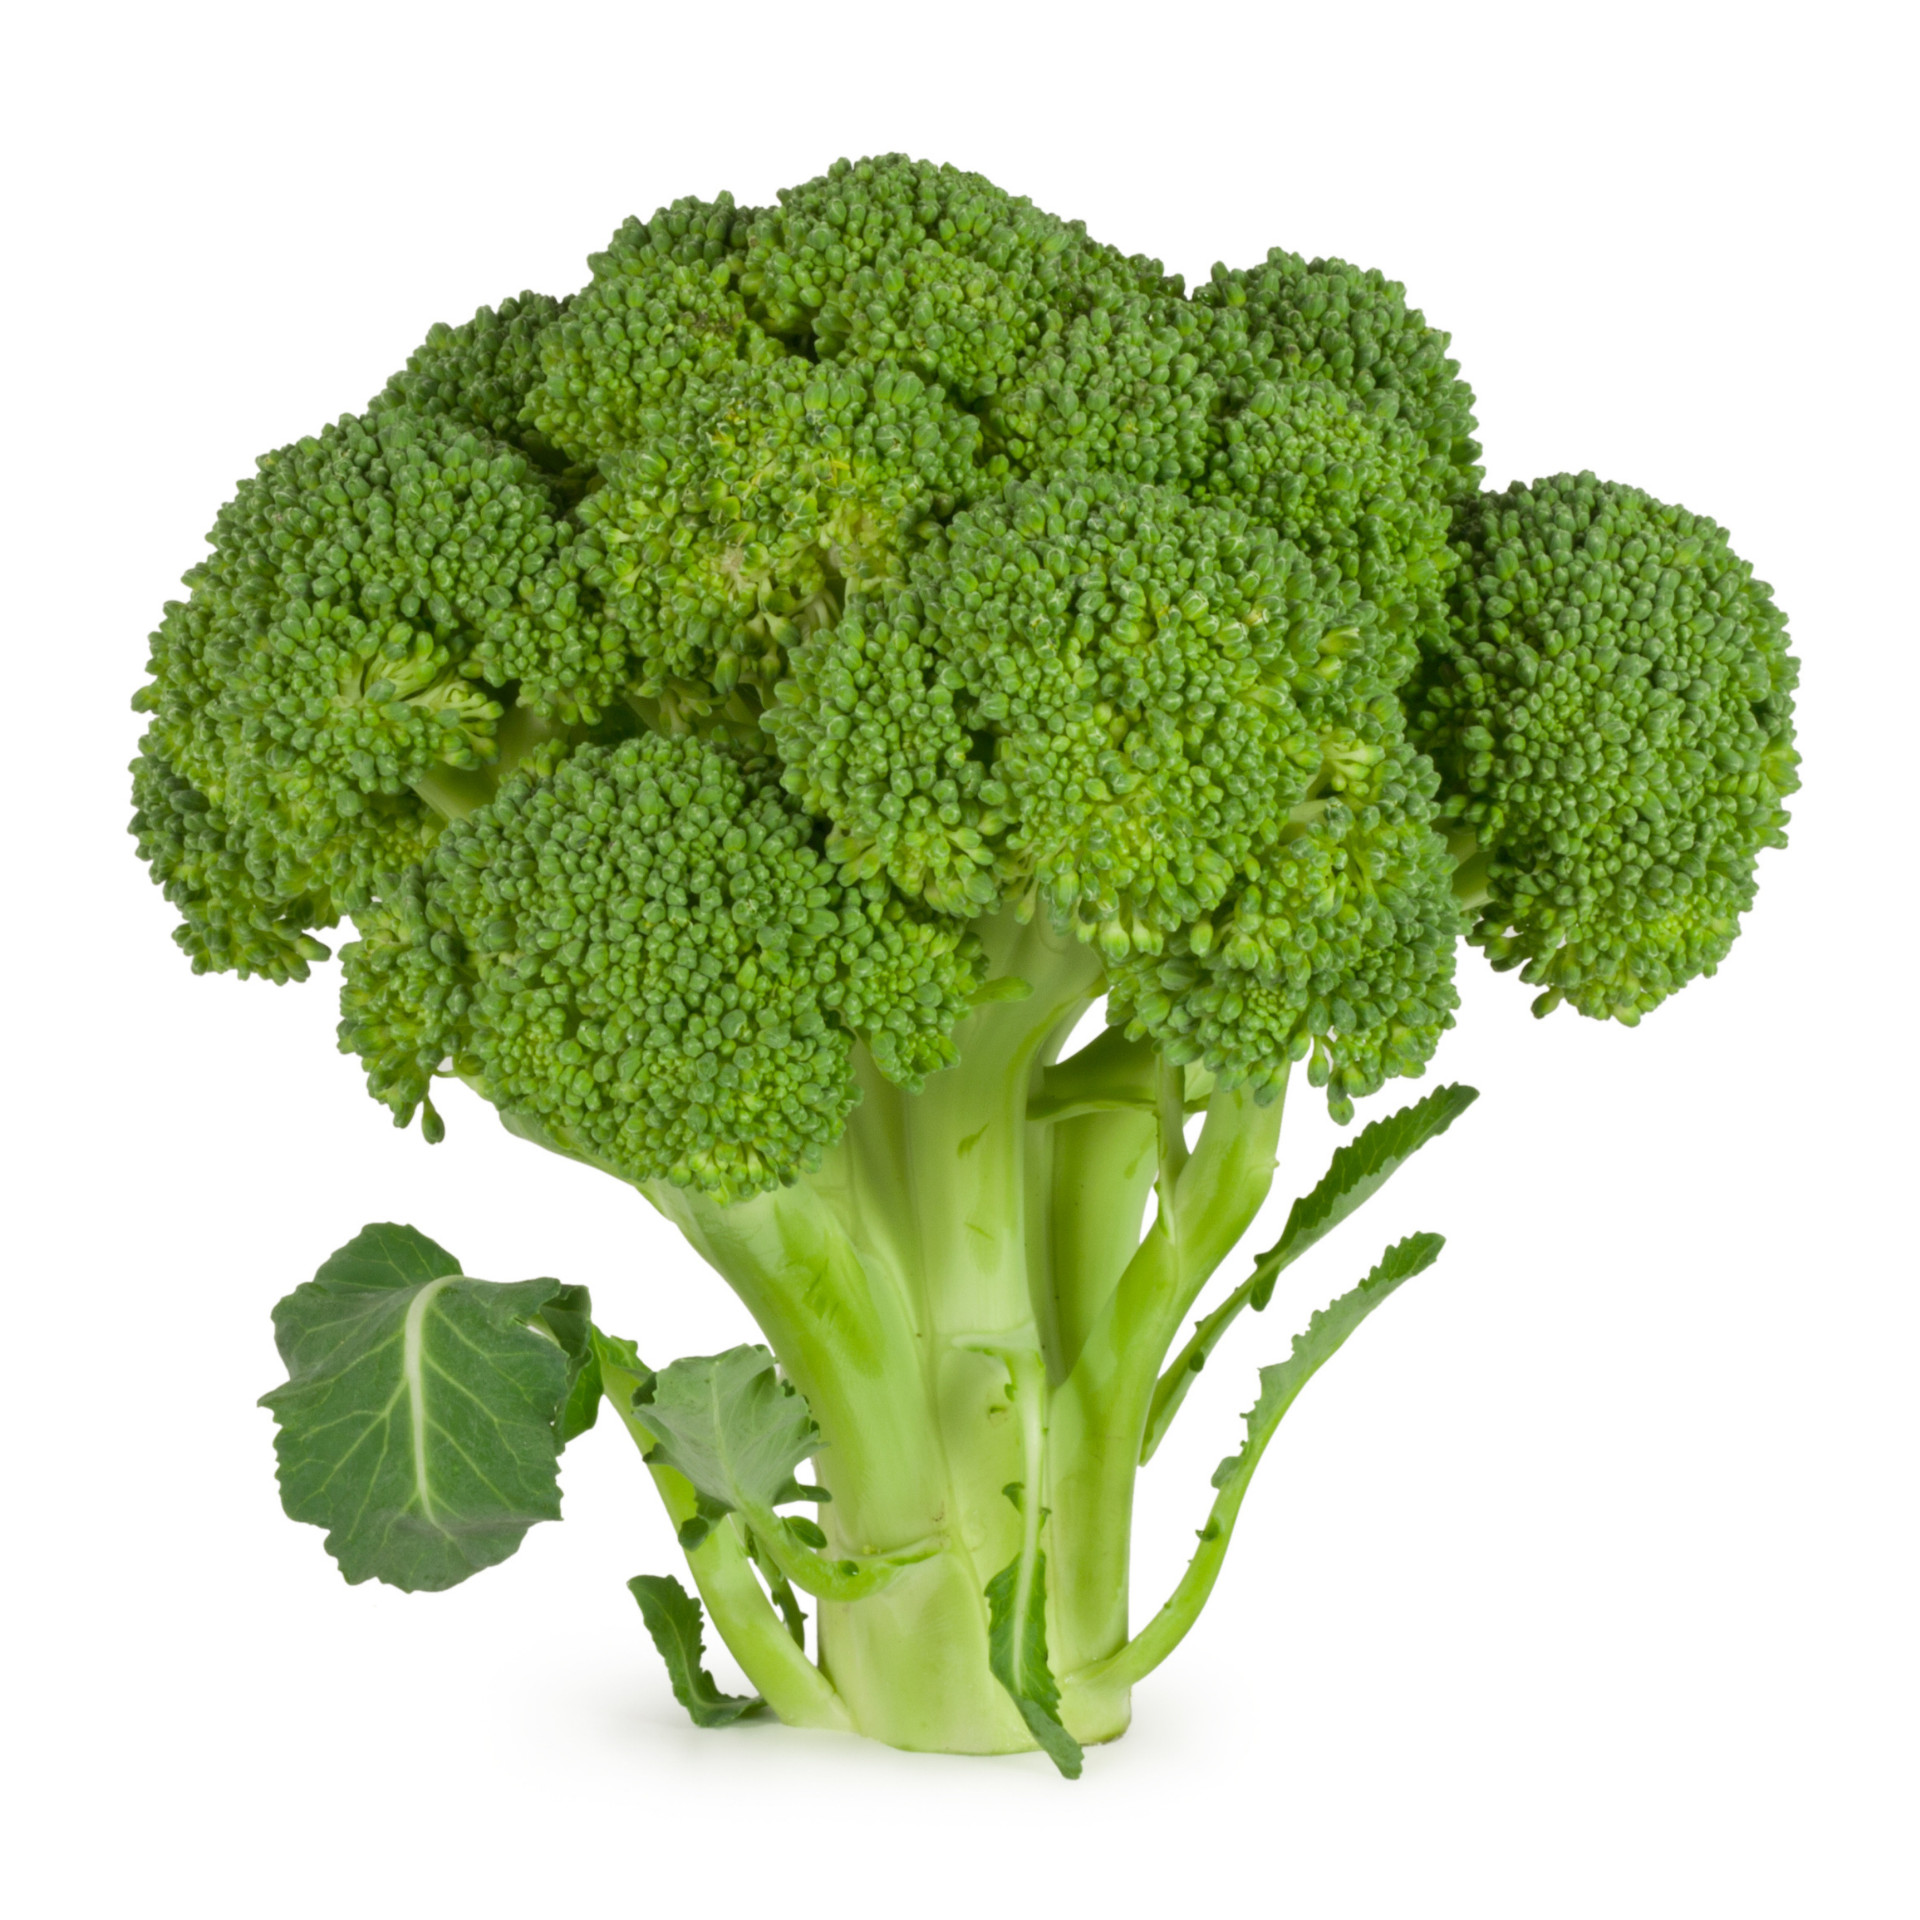 Świeże brokuły na sprzedaż w najlepszej cenie i jakości, sałata lodowa gotowa do eksportu